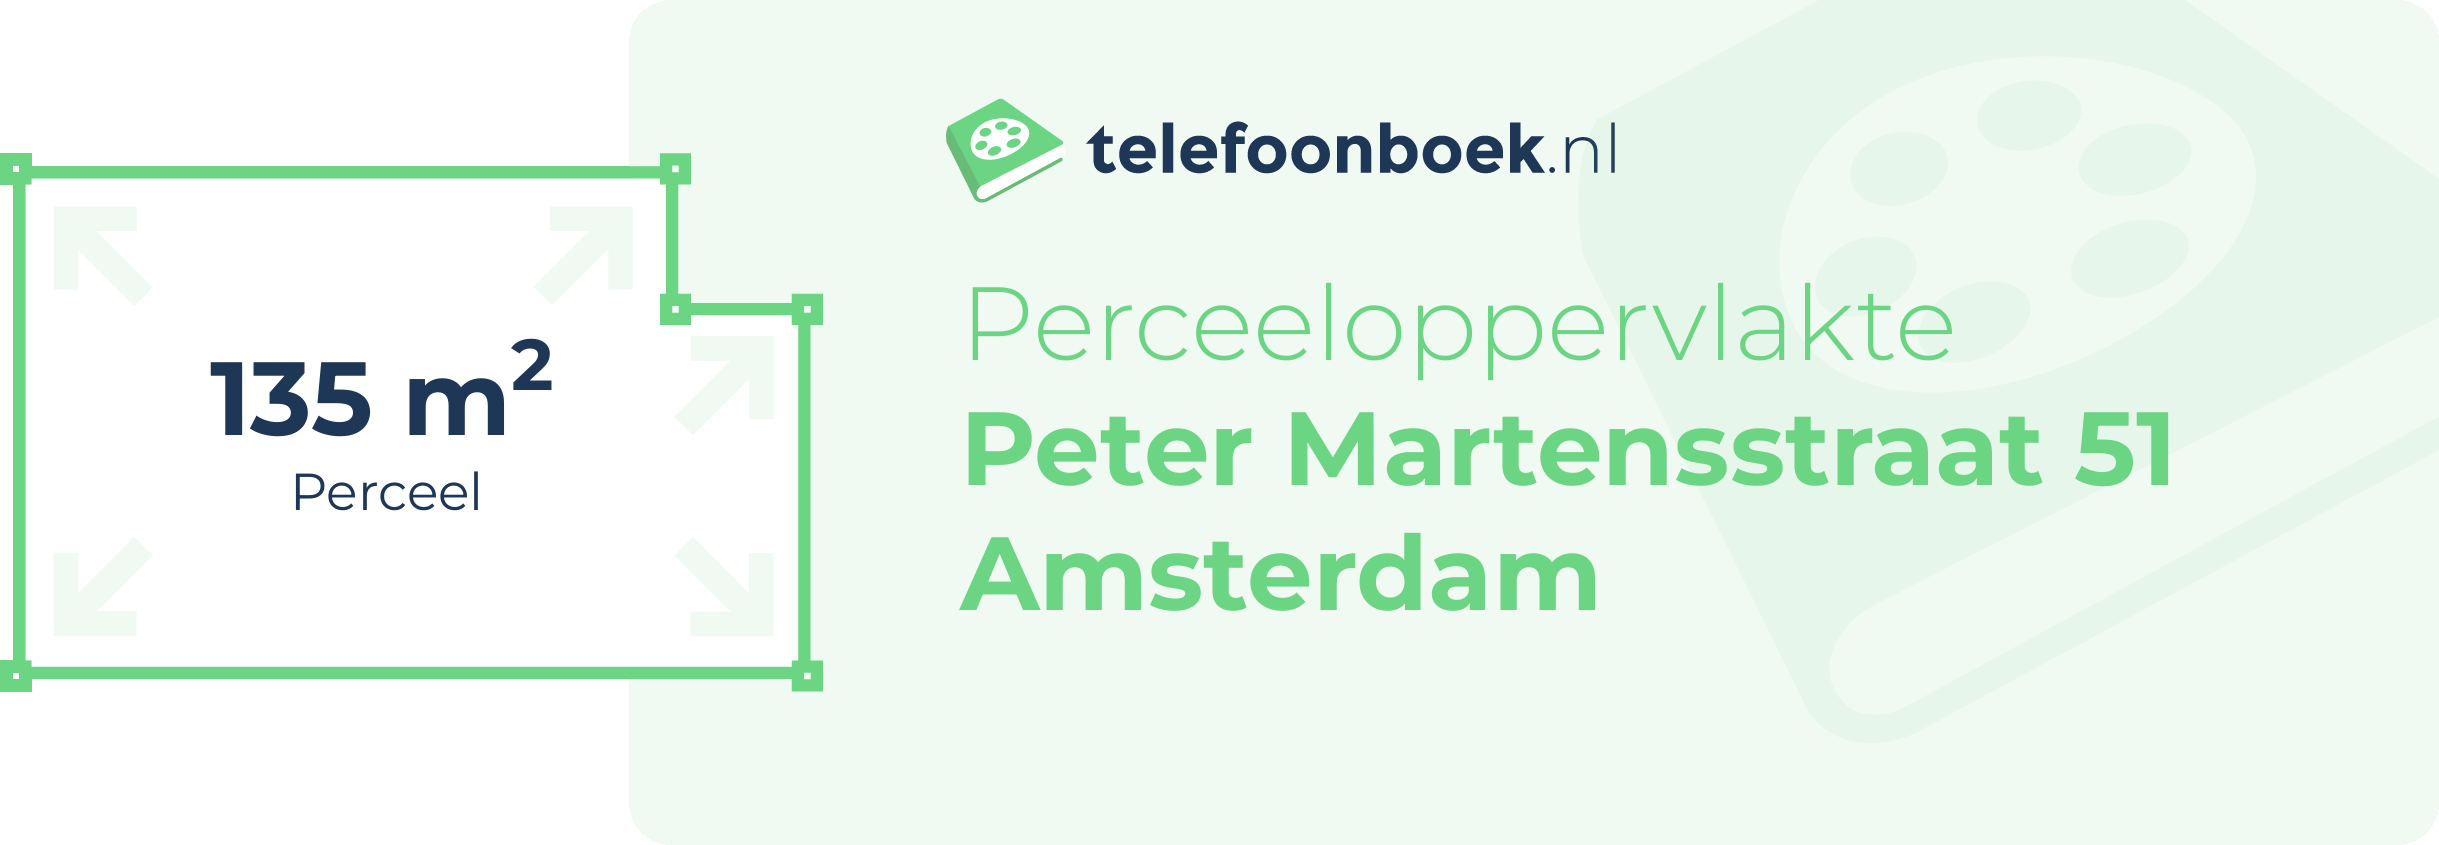 Perceeloppervlakte Peter Martensstraat 51 Amsterdam